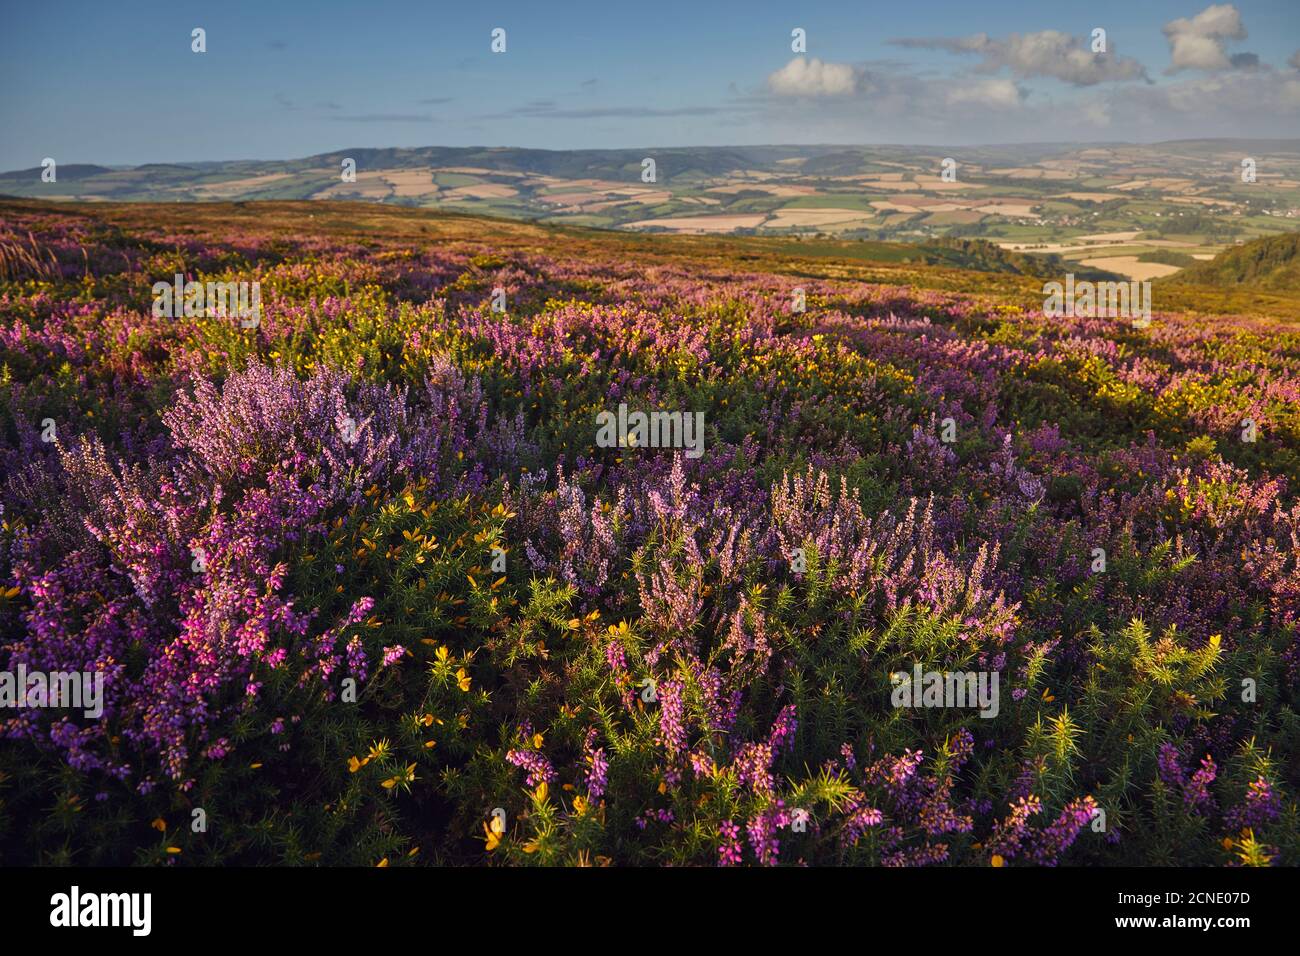 Chiné en fleur sur la lande de Beacon Hill, dans la région des collines de Quantock de beauté naturelle exceptionnelle, Somerset, Angleterre, Royaume-Uni, Europe Banque D'Images